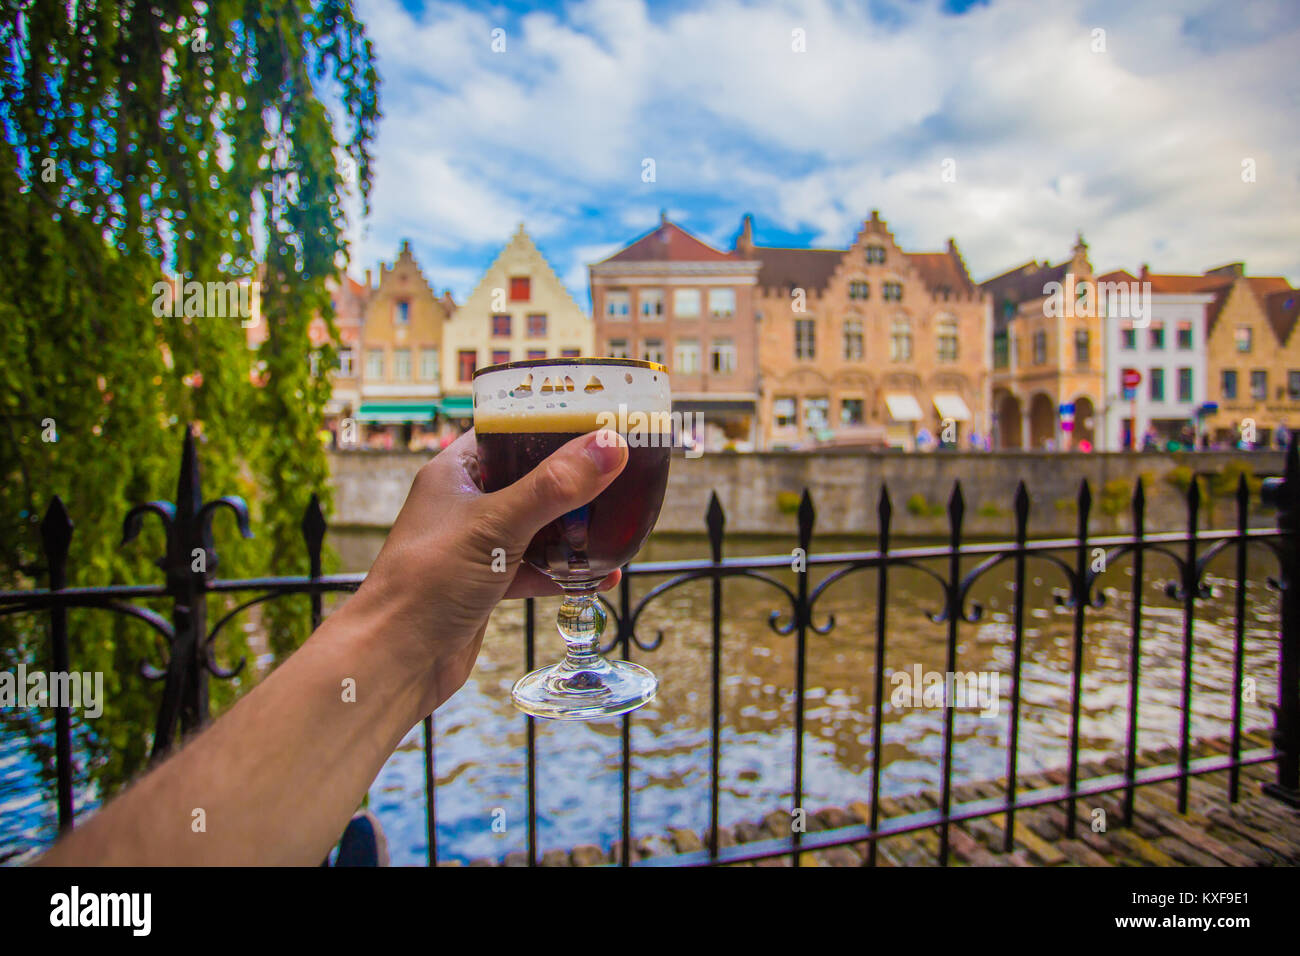 Glas Bier auf Brügge Stadtbild Hintergrund. Hand mit Bier Glas in Brügge, Belgien. Stockfoto